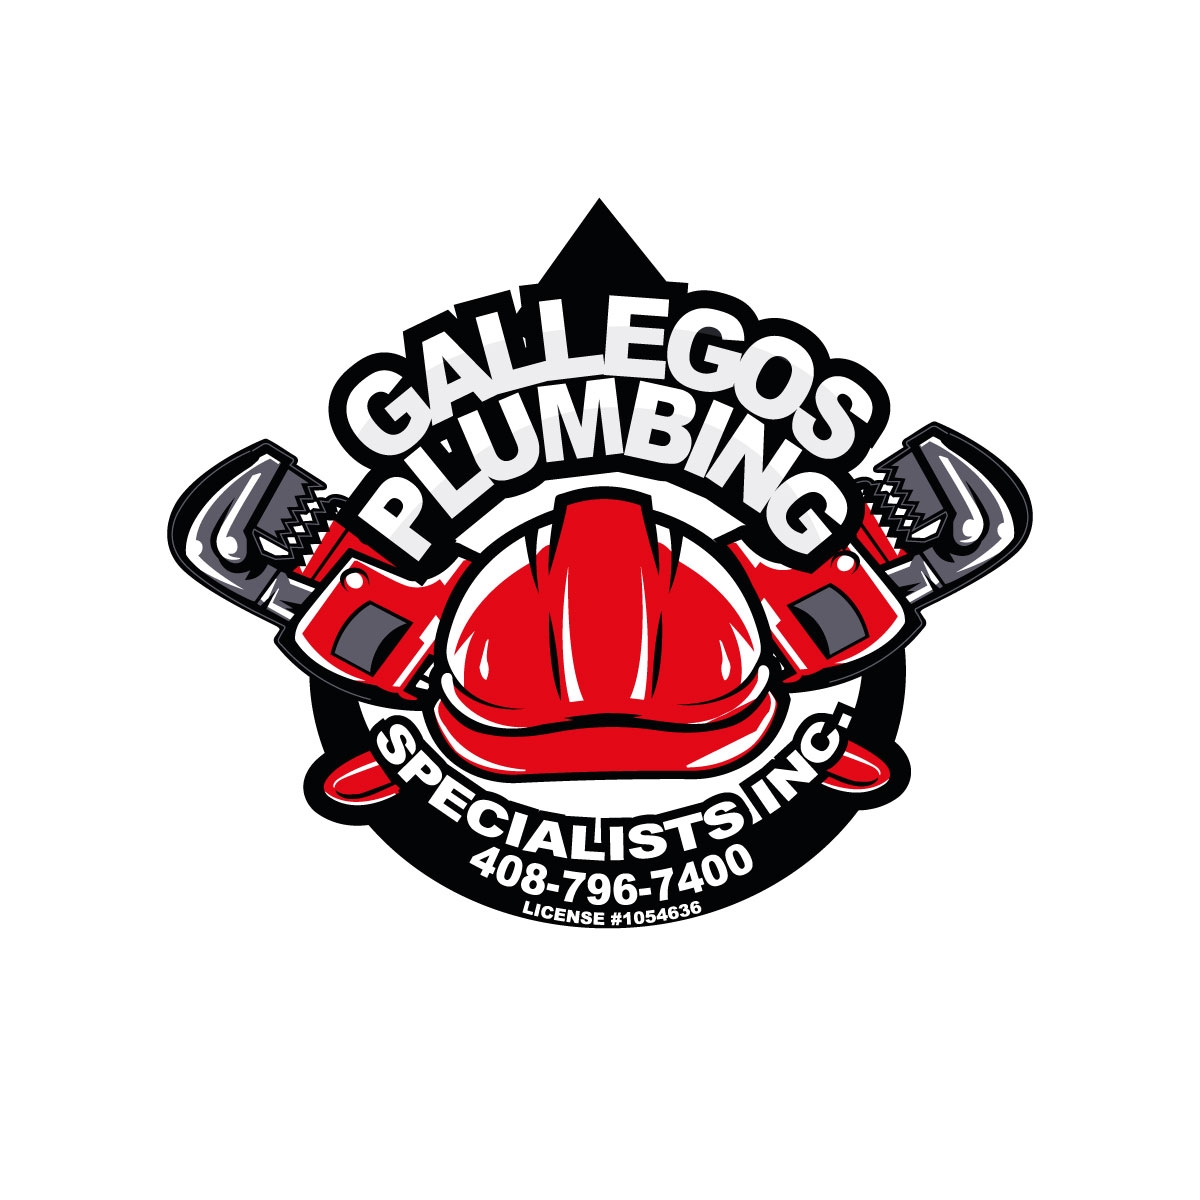 Gallegos Plumbing Specialist Inc's Logo